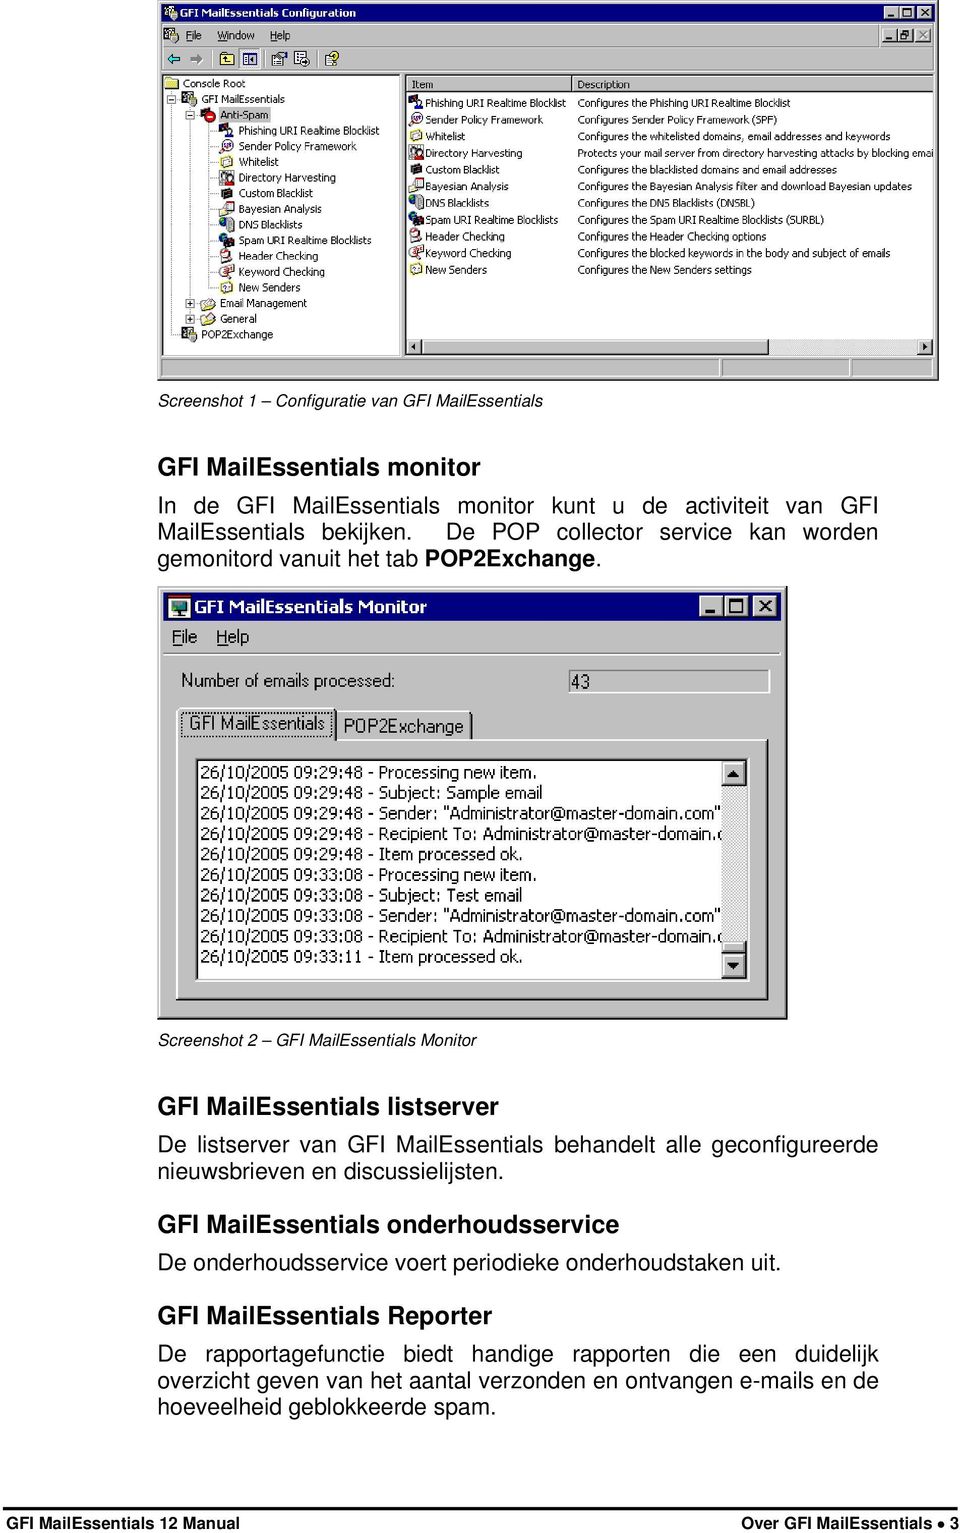 Screenshot 2 GFI MailEssentials Monitor GFI MailEssentials listserver De listserver van GFI MailEssentials behandelt alle geconfigureerde nieuwsbrieven en discussielijsten.